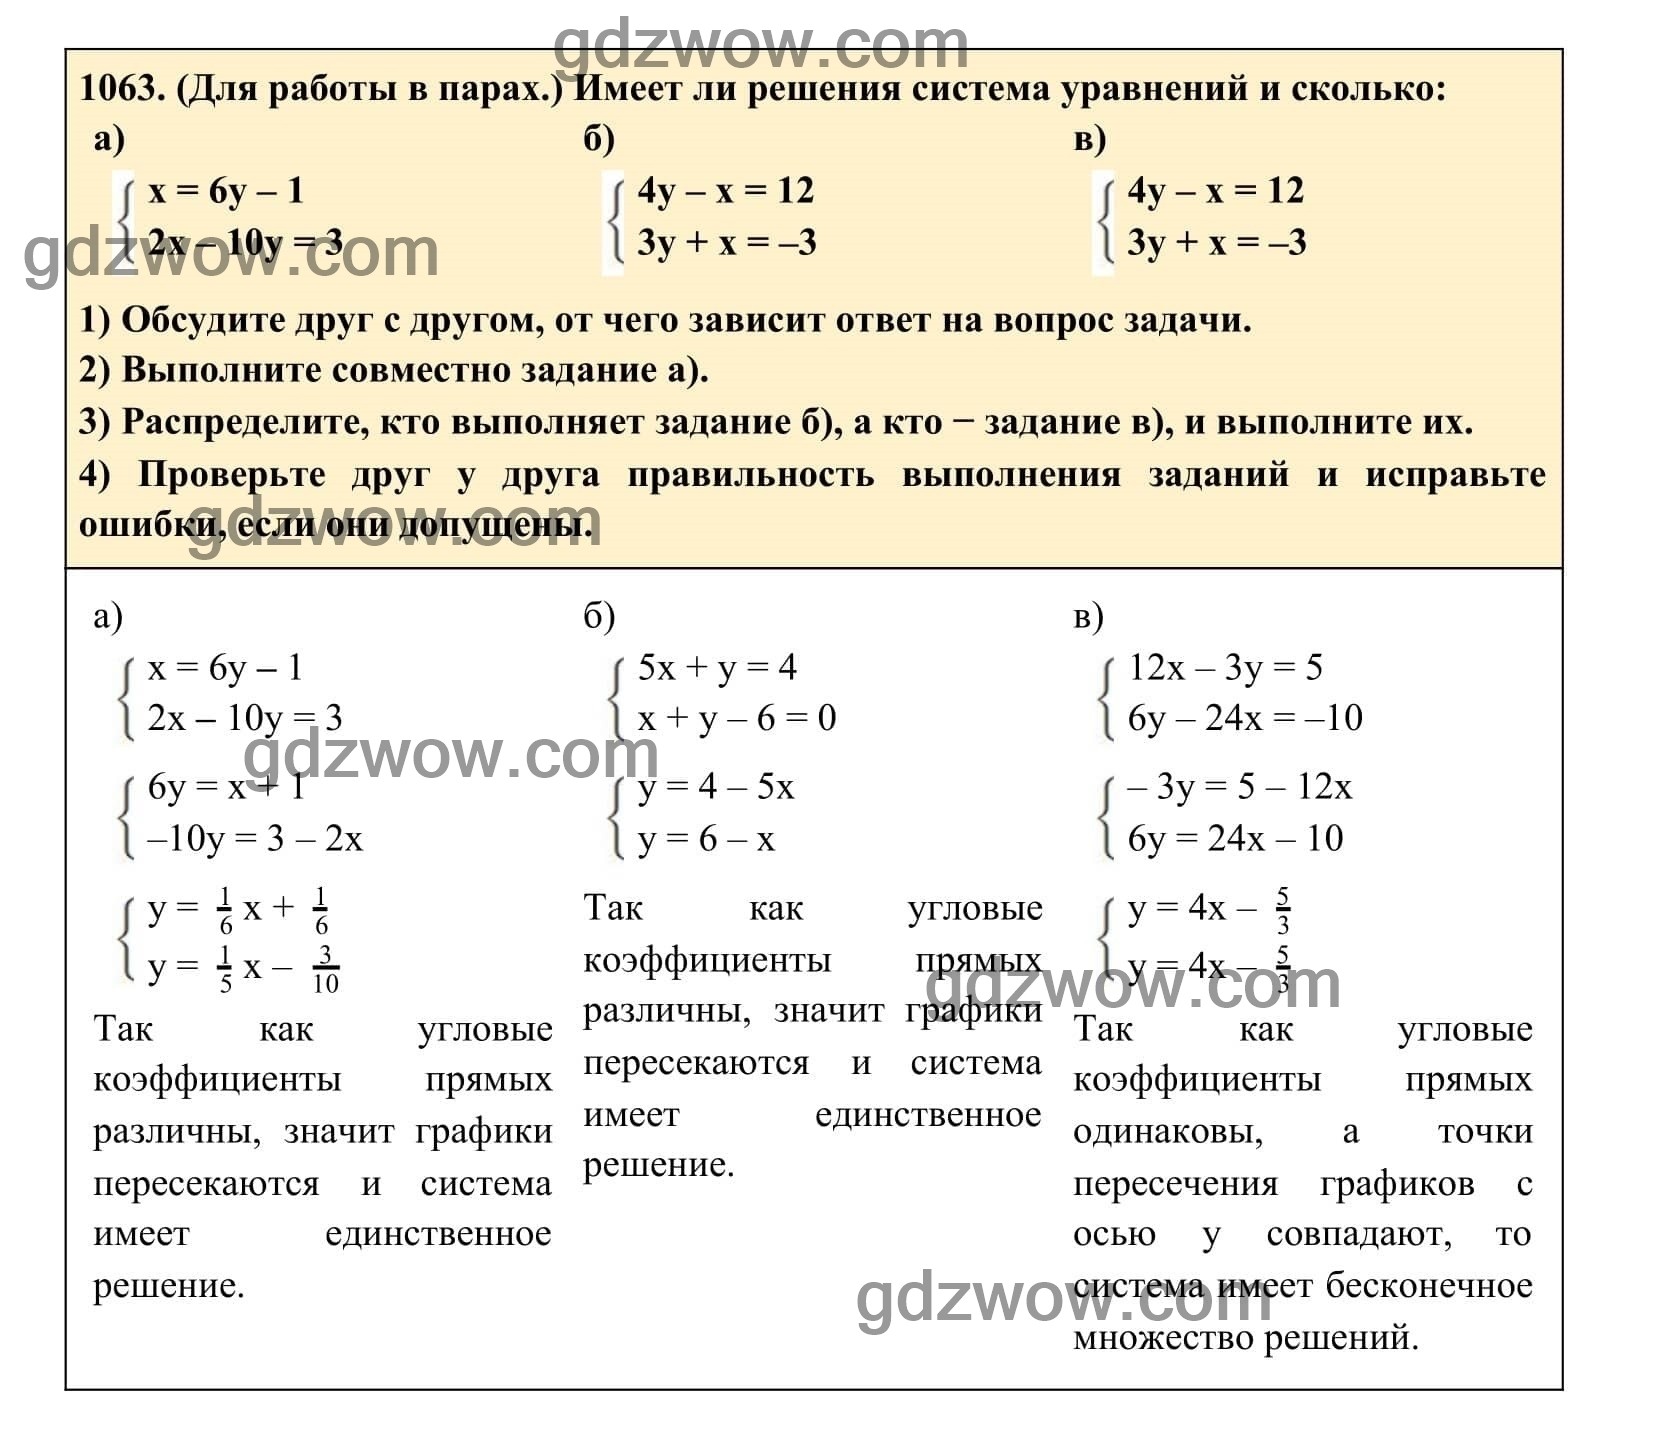 Упражнение 1063 - ГДЗ по Алгебре 7 класс Учебник Макарычев (решебник) - GDZwow